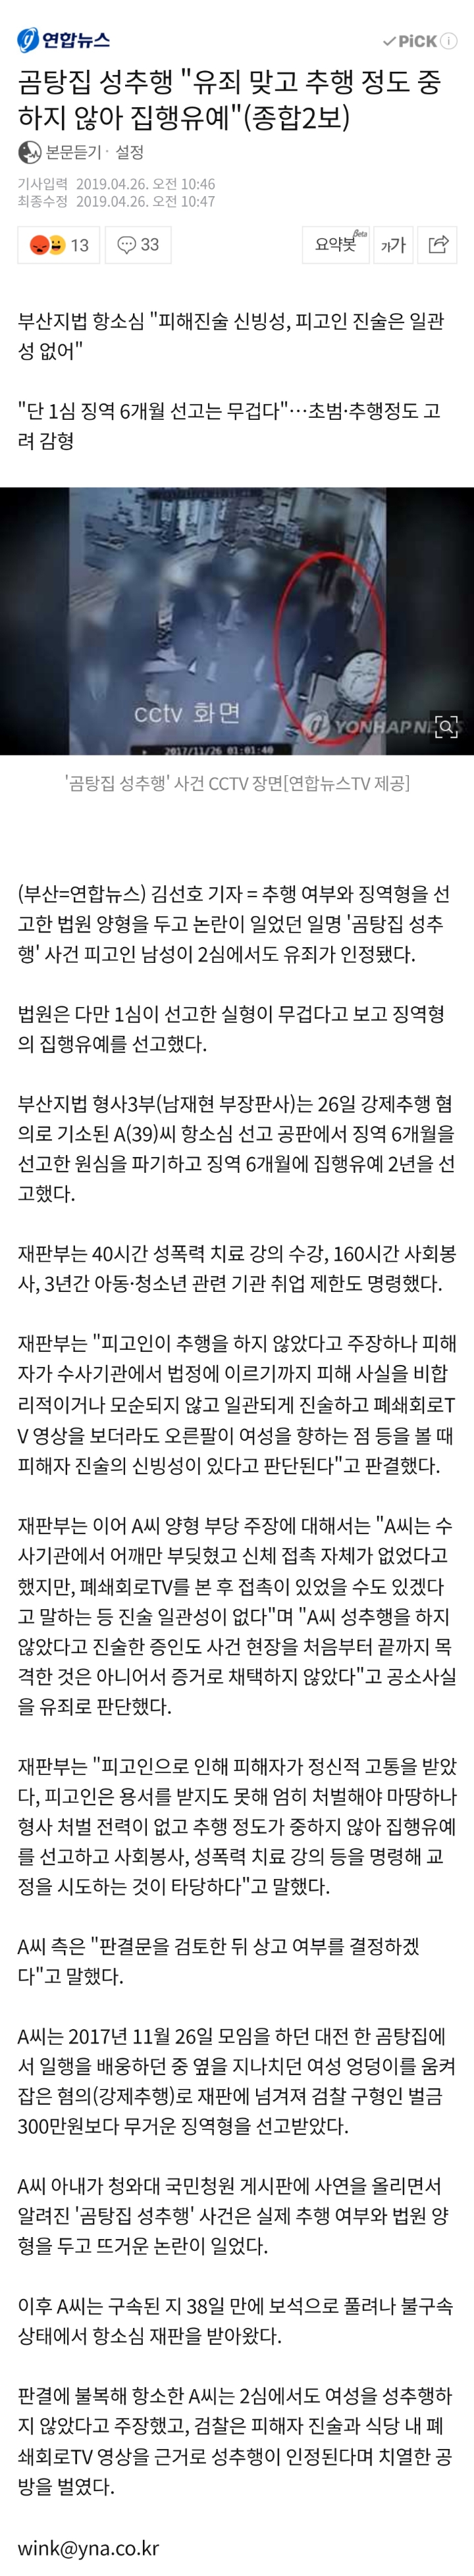 곰탕집 성추행 항소심서도 유죄 인정…징역 6개월·집유 2년